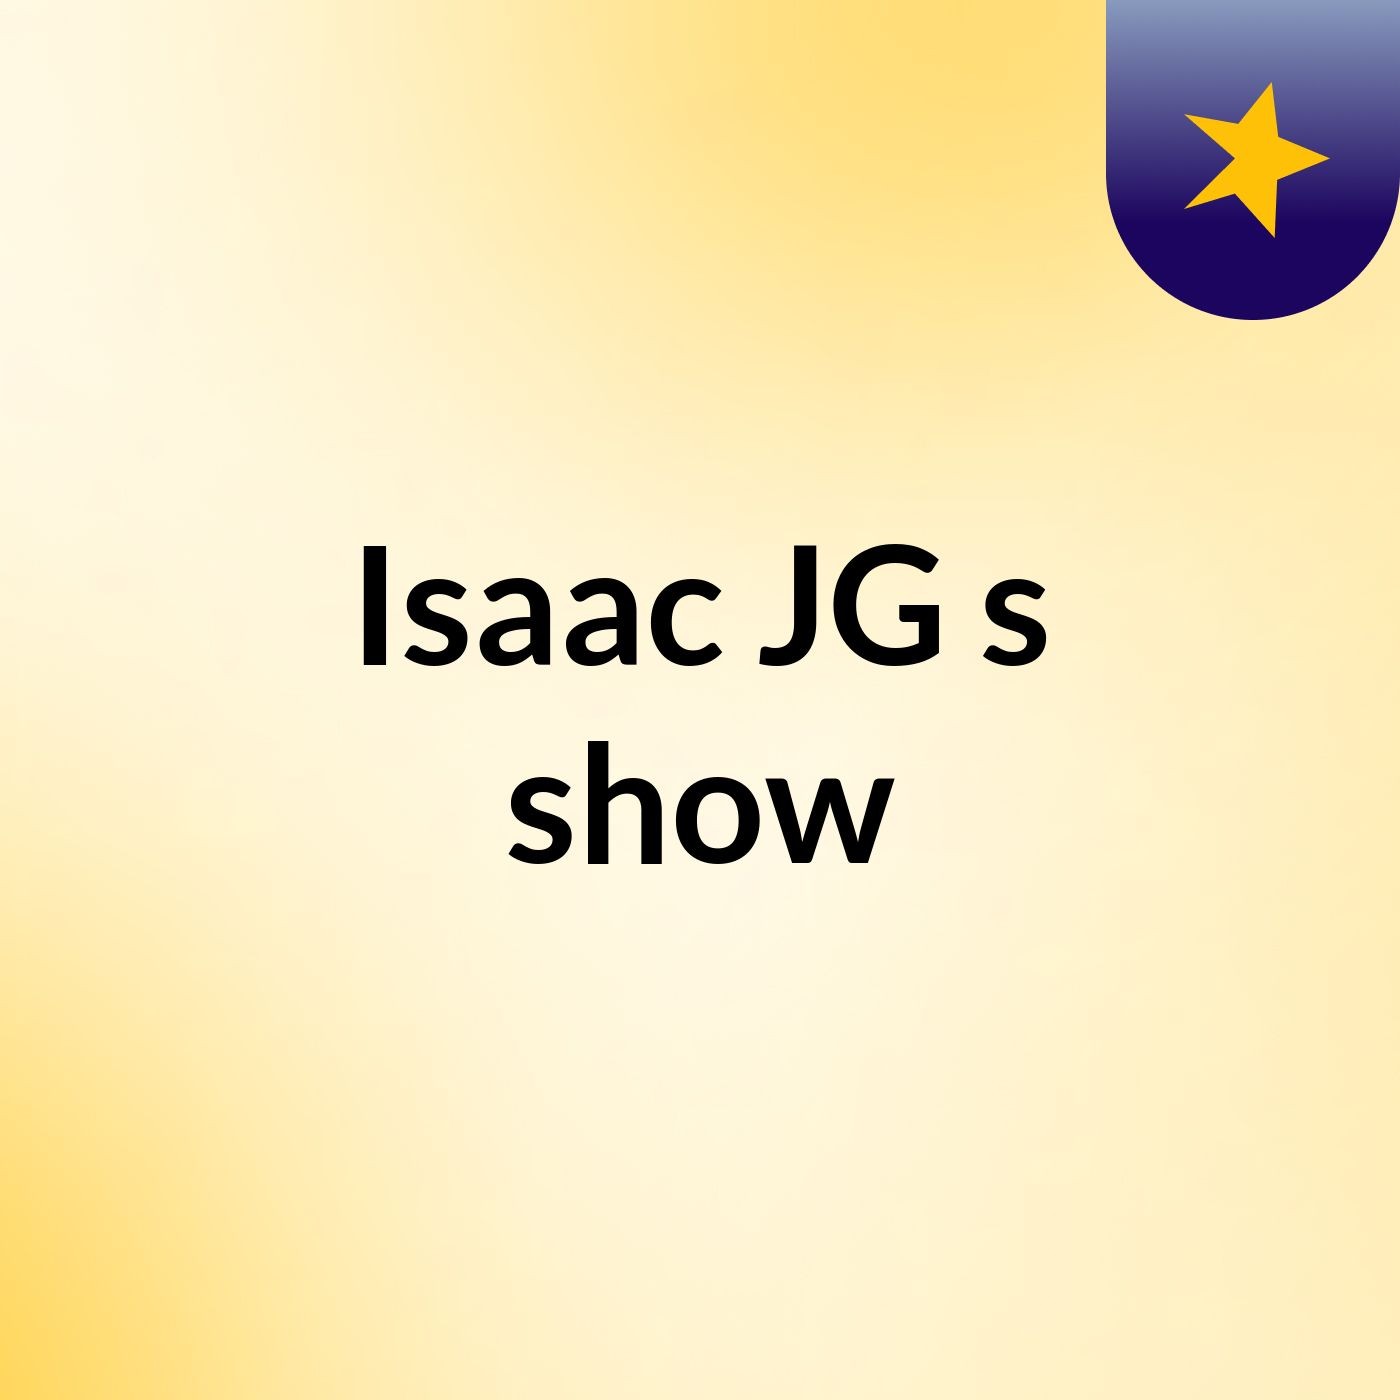 Isaac JG's show